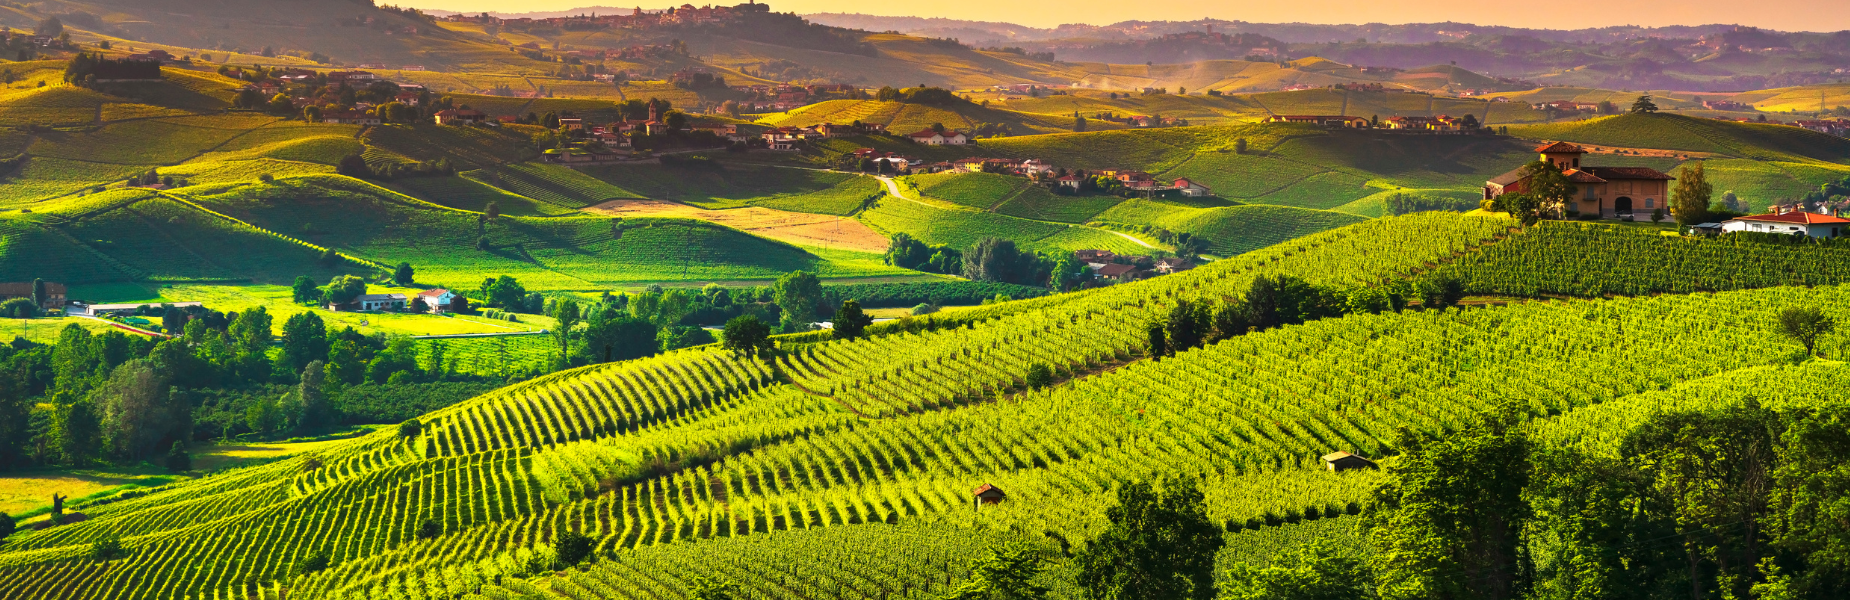 wijnvelden italie